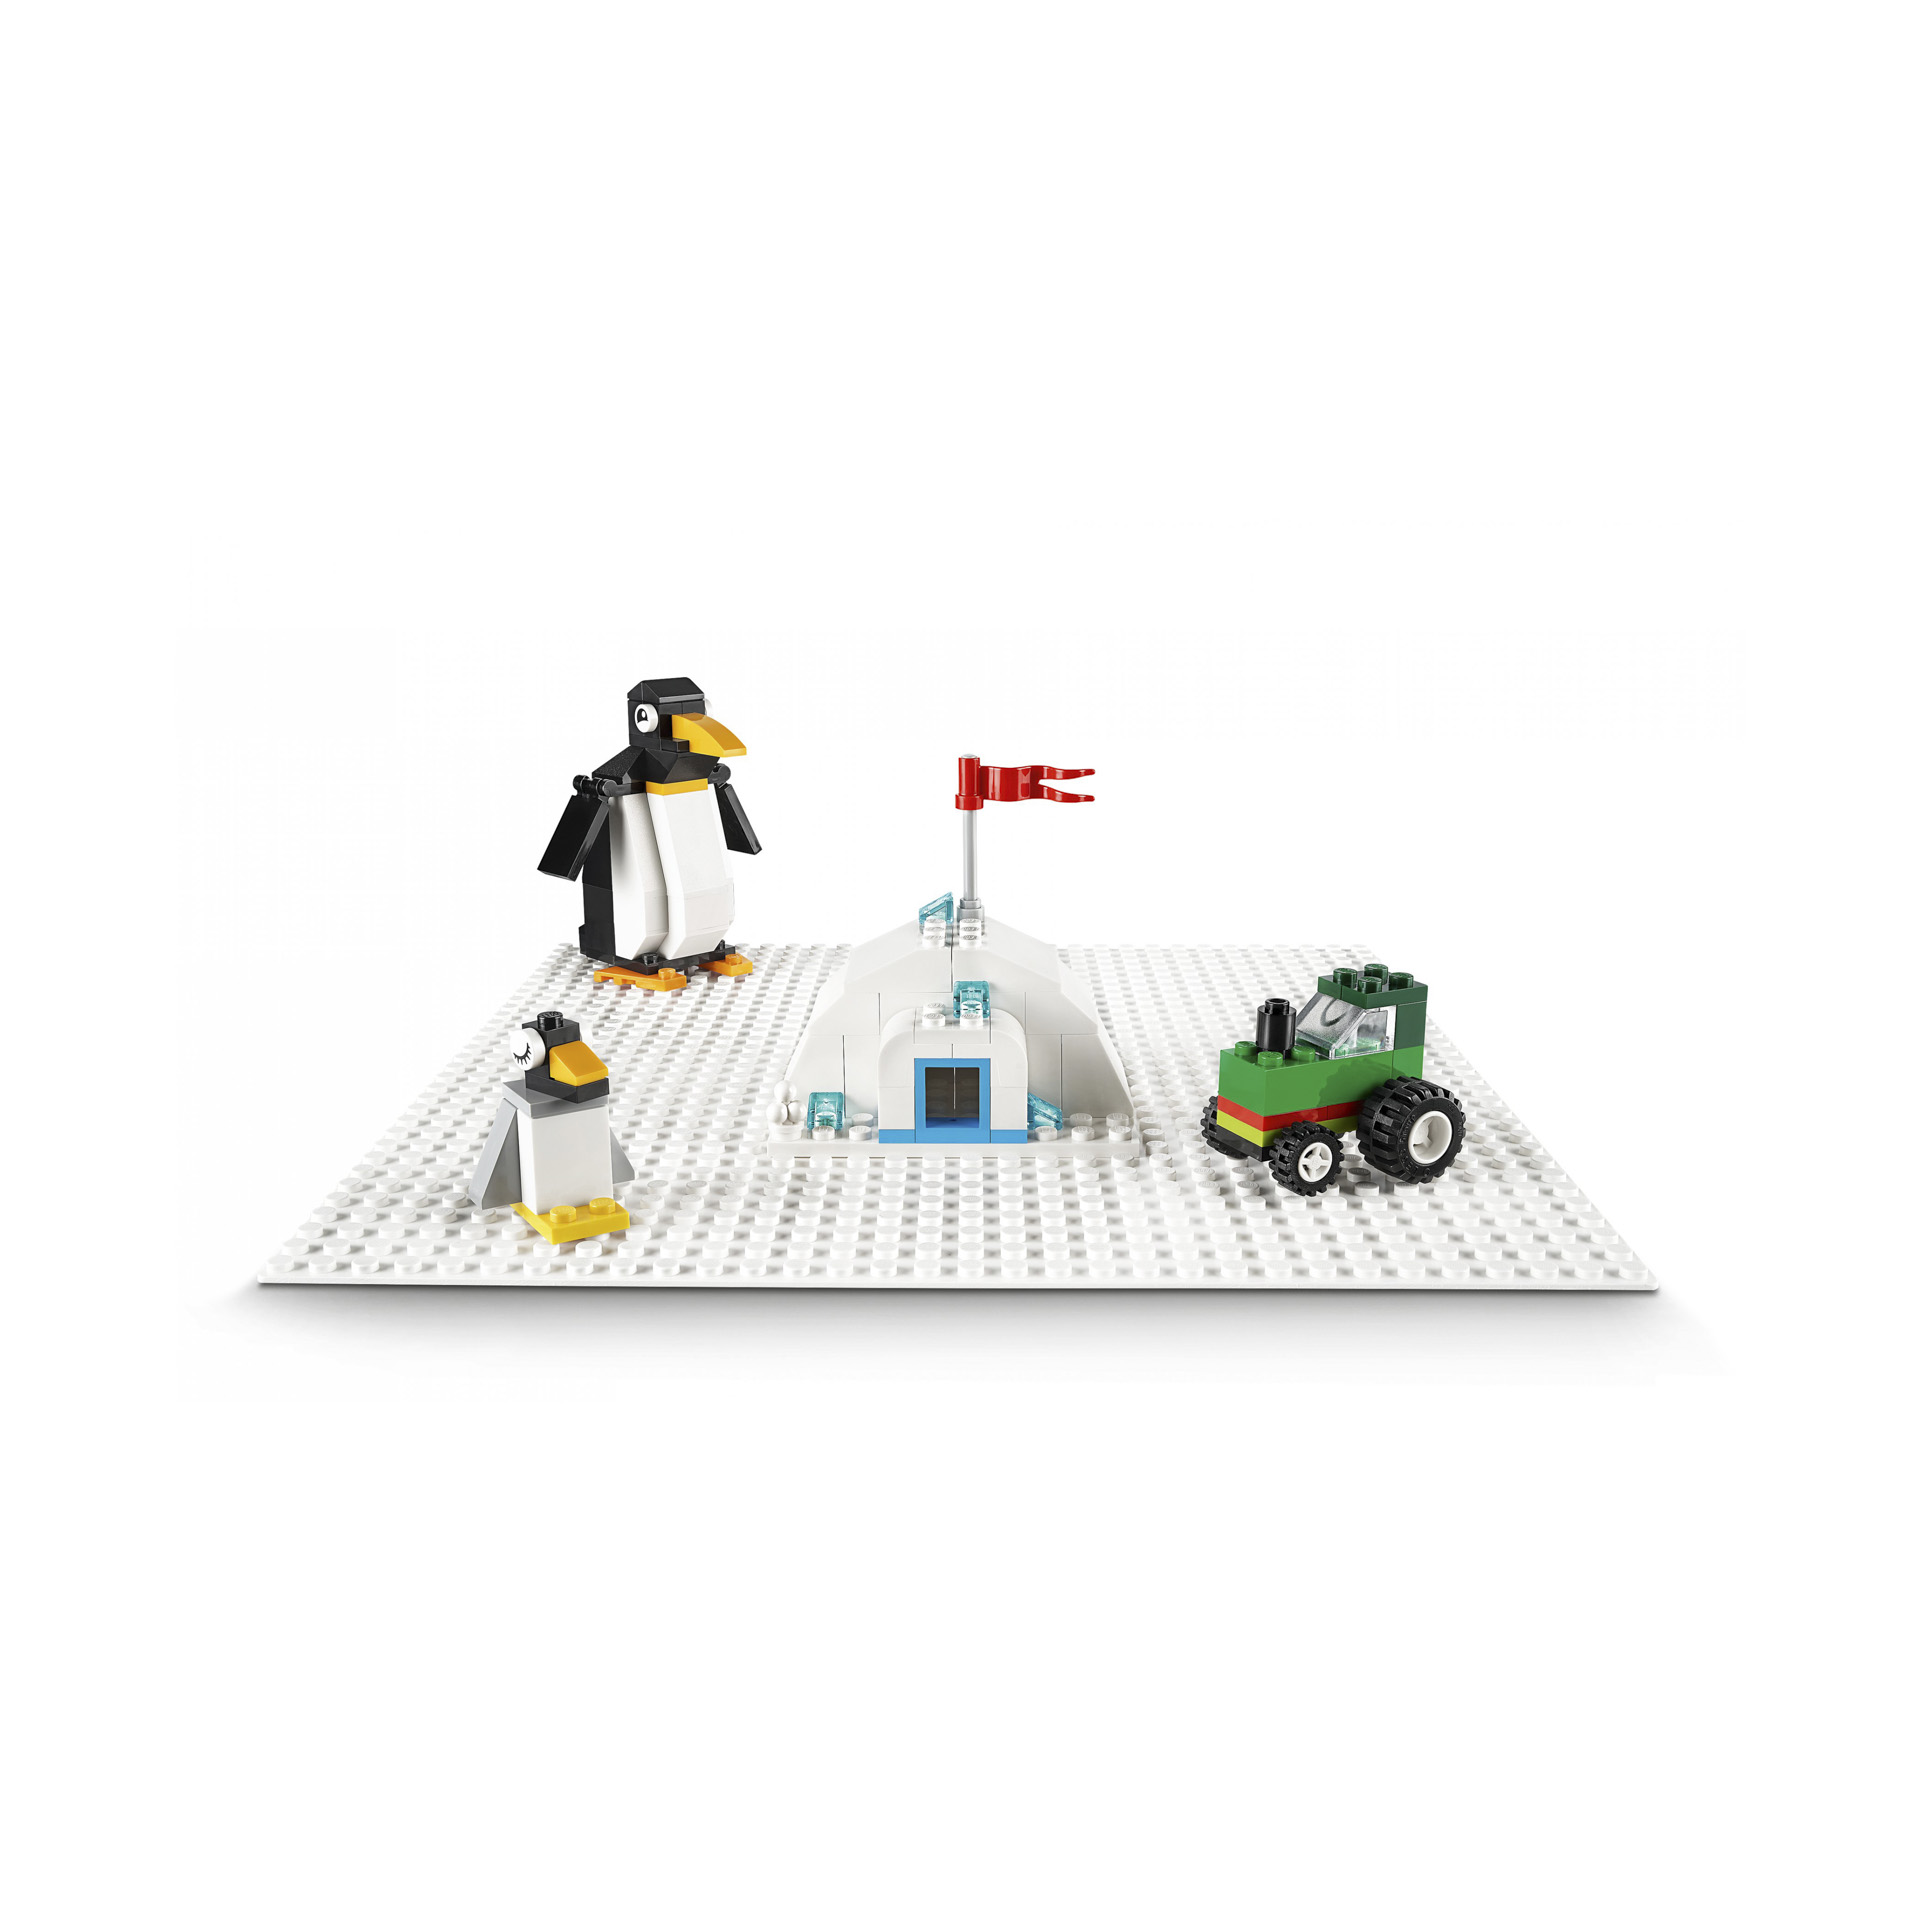 LEGO Classic Base Bianca, Base da Costruzione 25 cm x 25 cm per Ambientazioni In 11010, , large